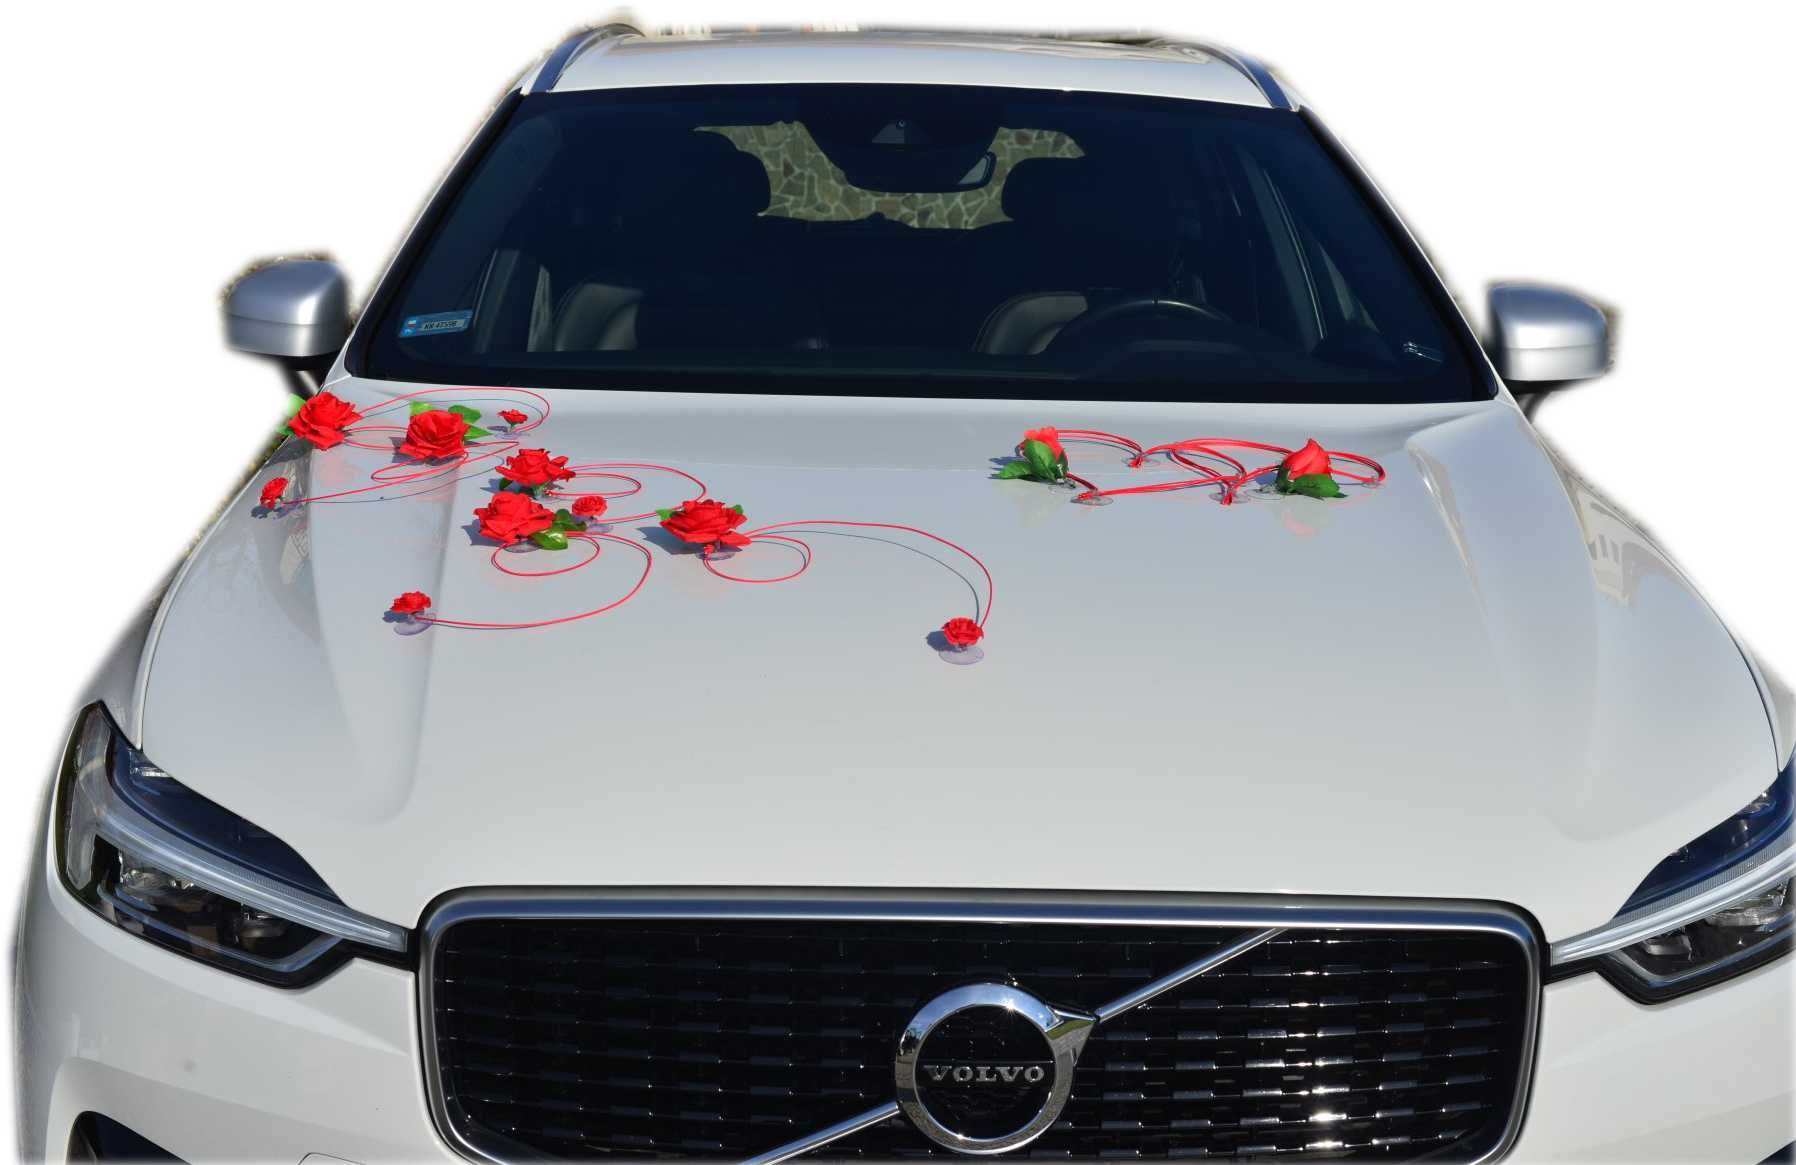 Dekoracja na samochód ślubny kwiaty ozdoby na auto 316